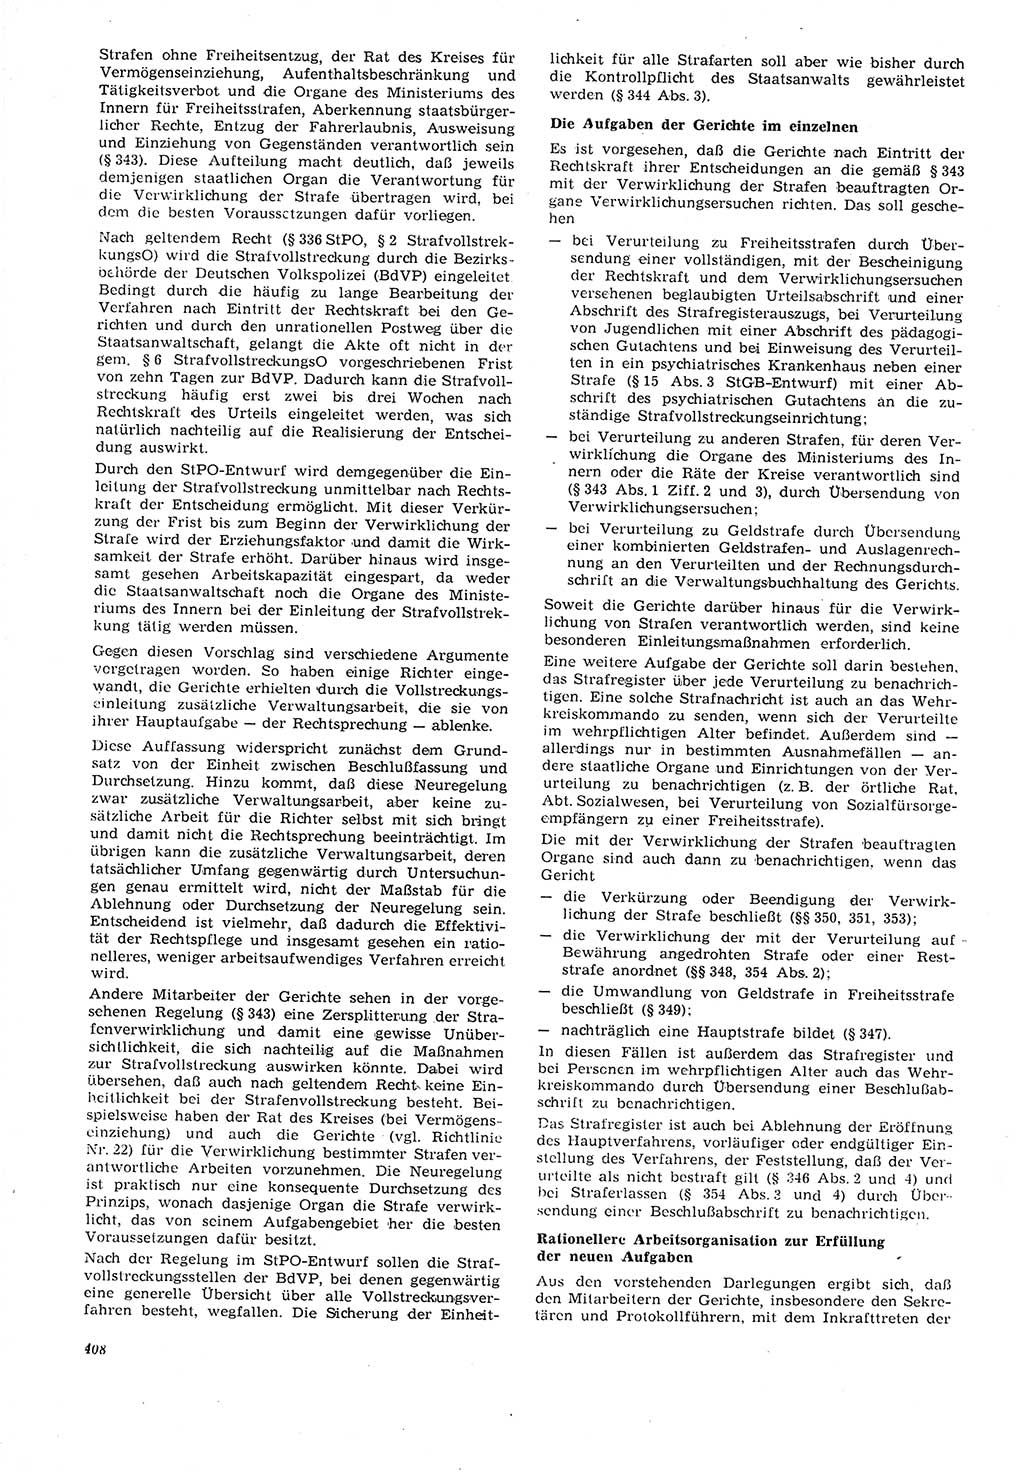 Neue Justiz (NJ), Zeitschrift für Recht und Rechtswissenschaft [Deutsche Demokratische Republik (DDR)], 21. Jahrgang 1967, Seite 408 (NJ DDR 1967, S. 408)